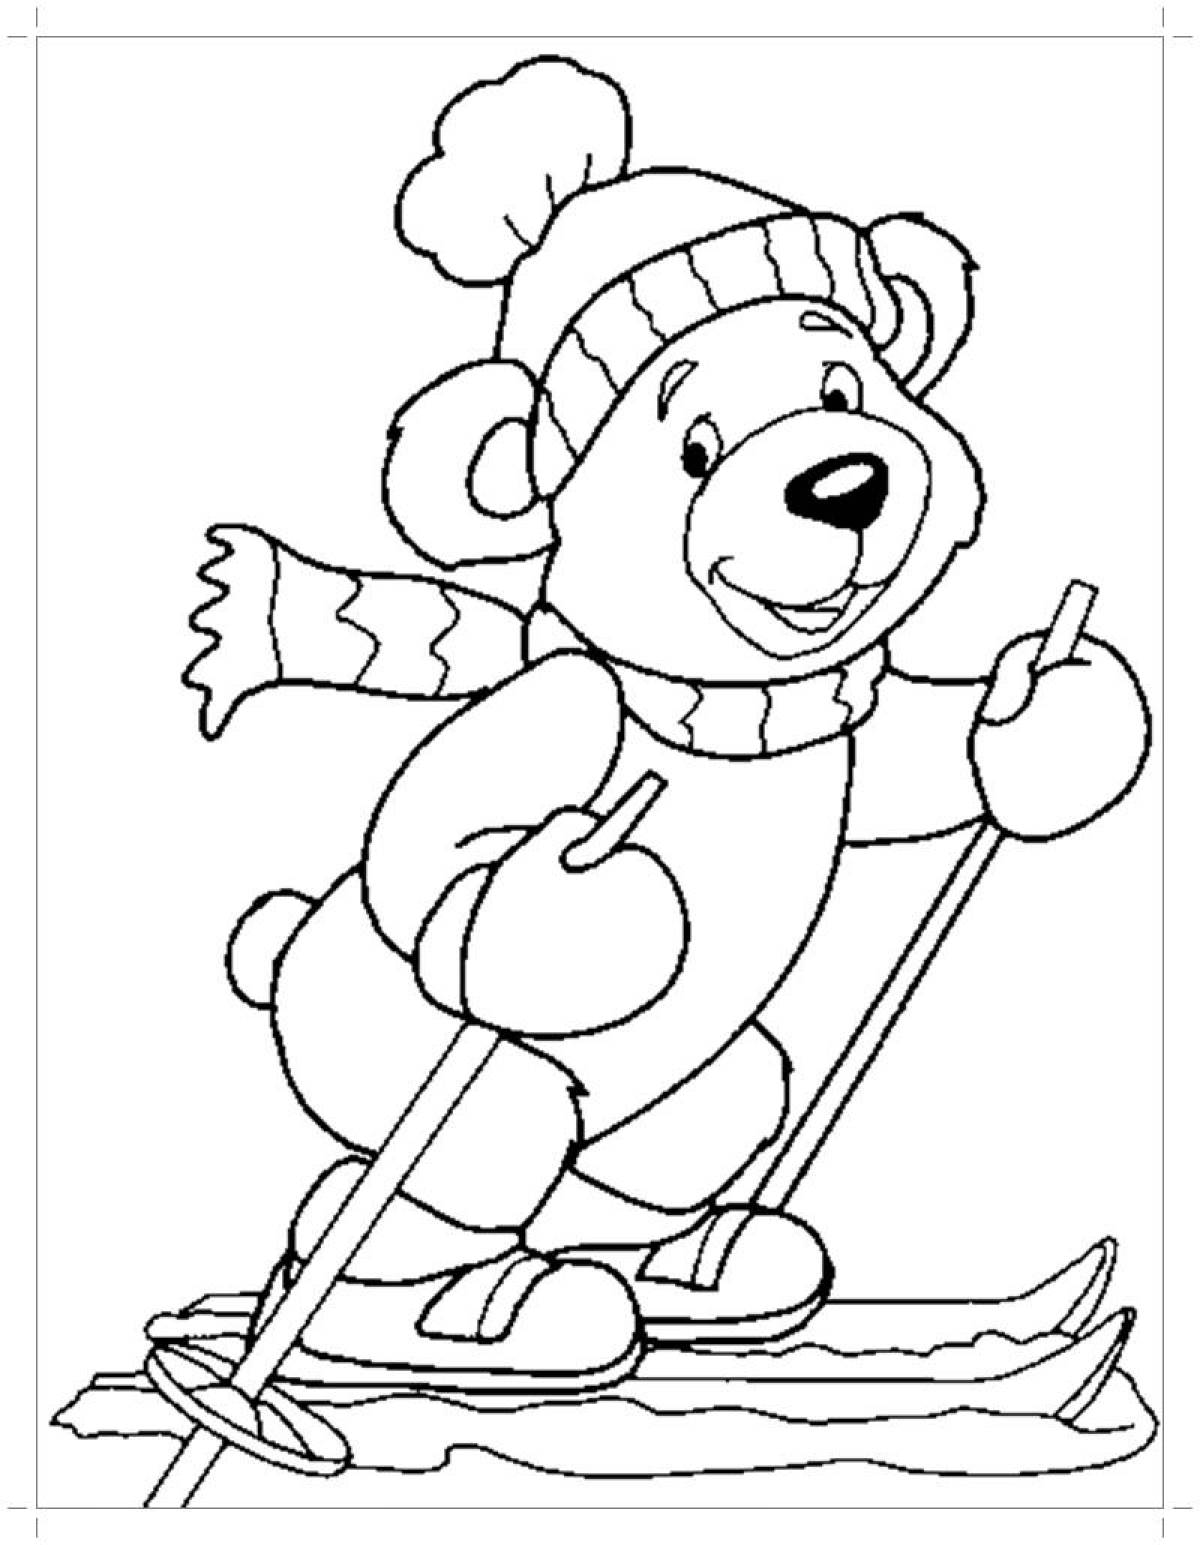 Увлекательная раскраска зима для детей 4-5 лет